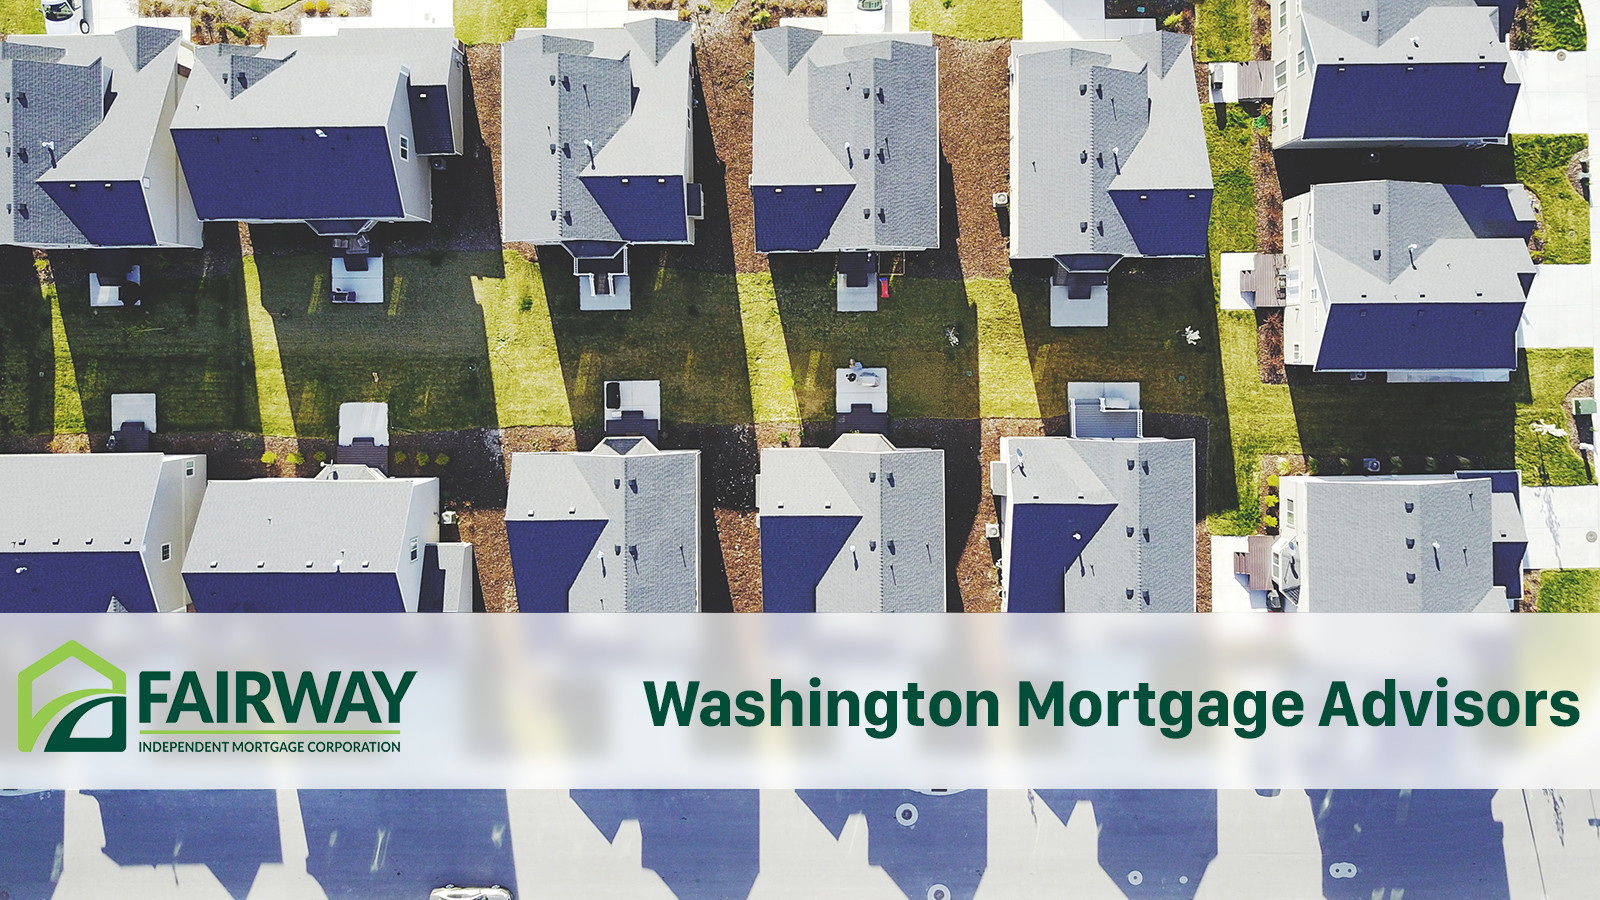 Washington Mortgage Advisors